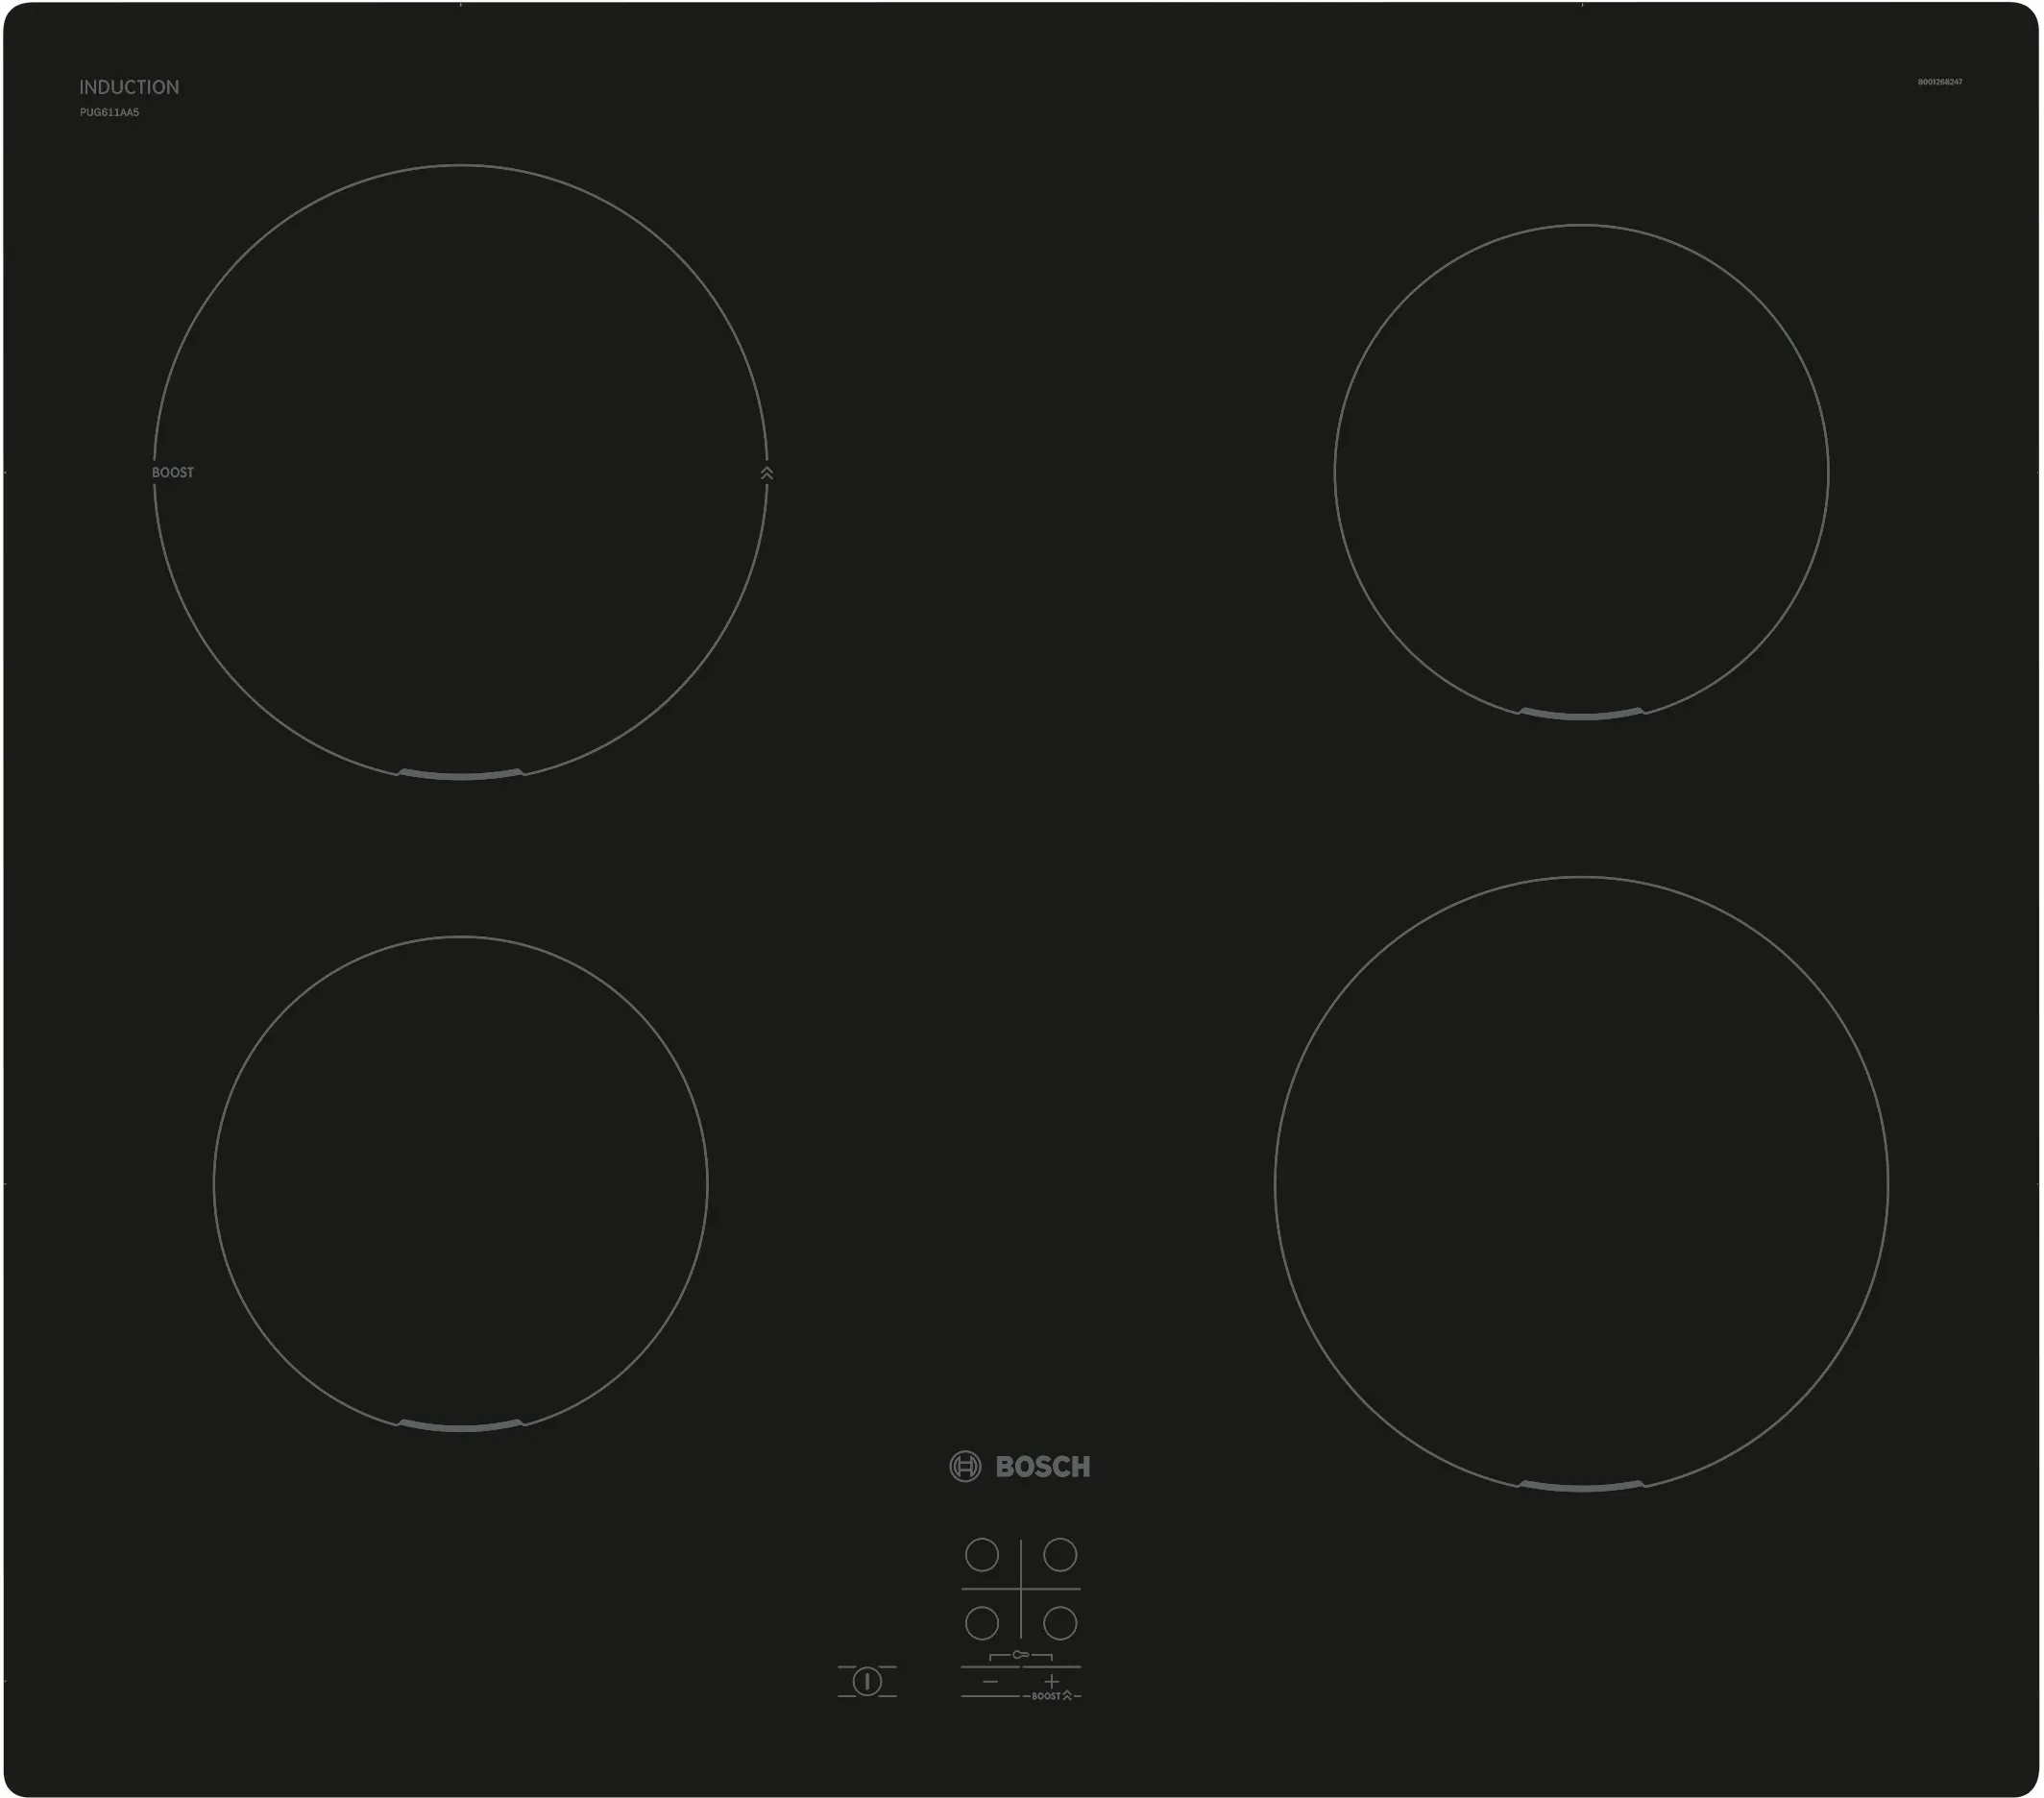 Serija 2 Indukciona ploča za kuvanje 60 cm Crna, ugradnja bez okvira 